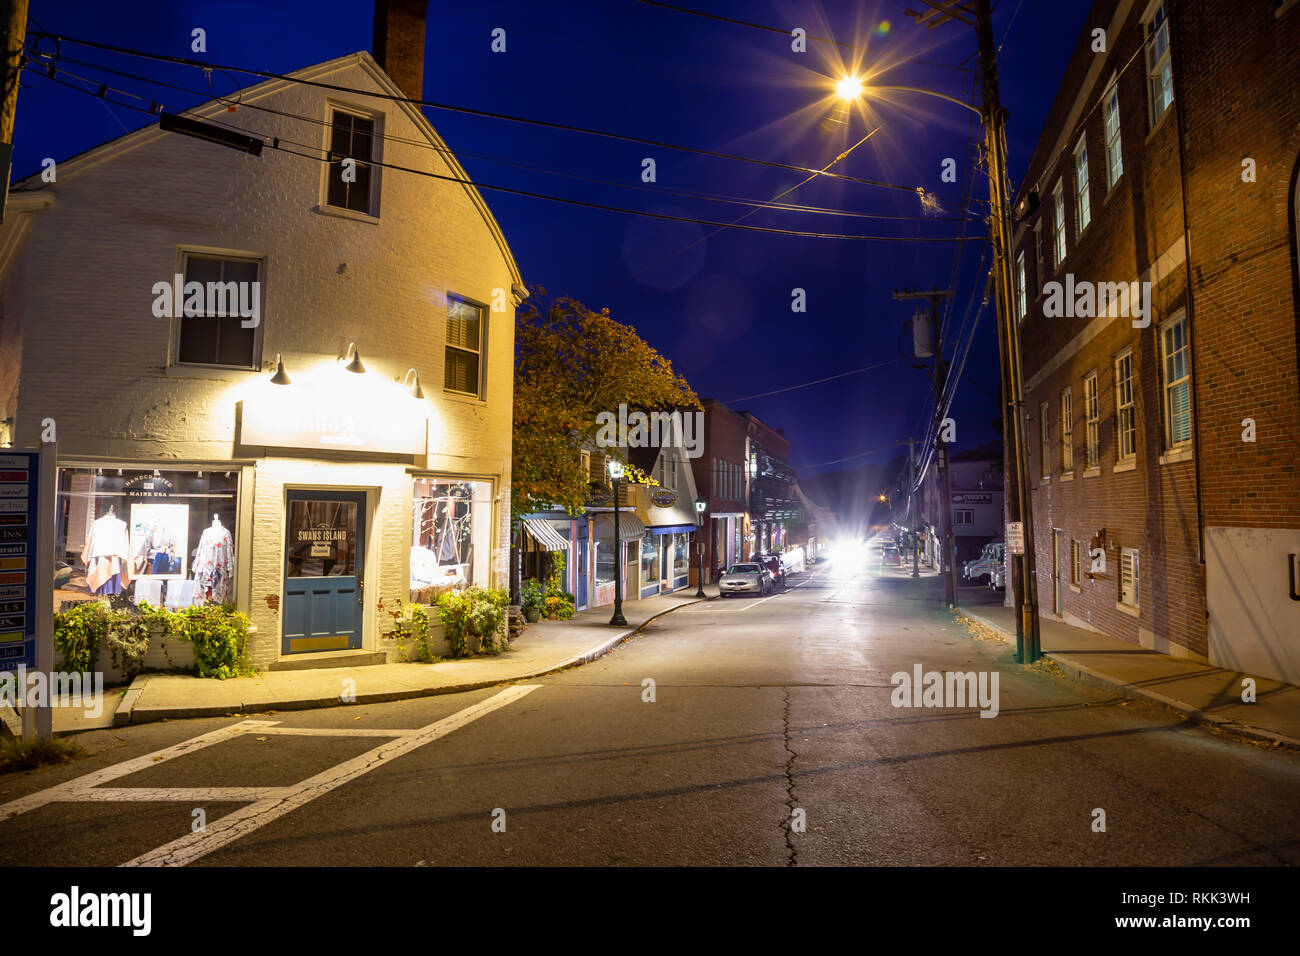 Camden, Maine, Vereinigte Staaten - 23. Oktober 2018: Nacht Blick auf eine kleine touristische Stadt liegt an der Ostküste von Nordamerika. Stockfoto